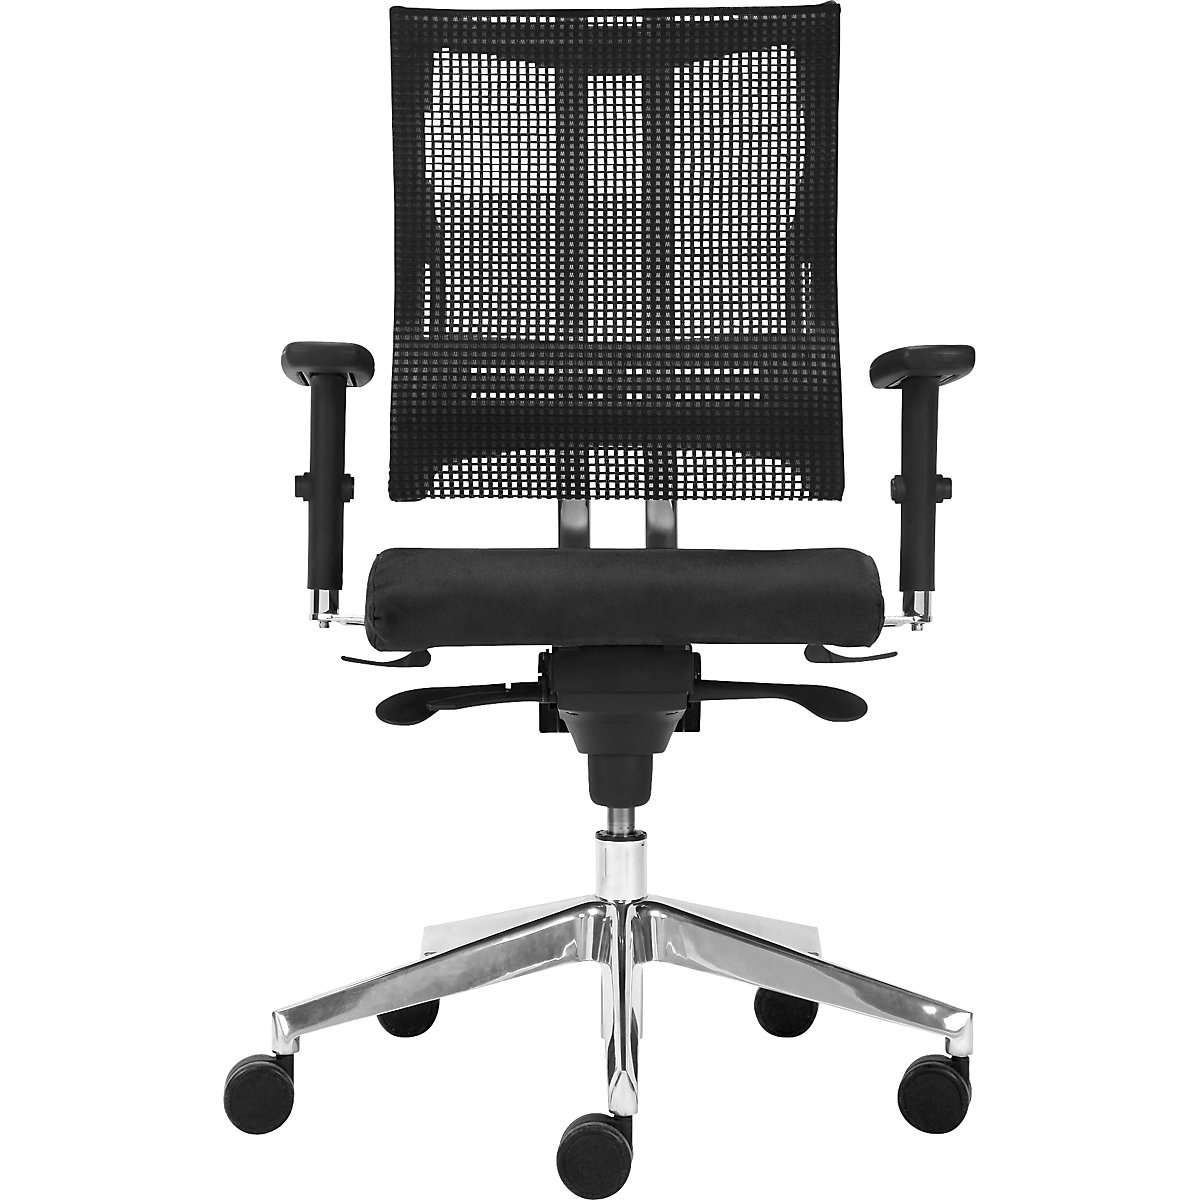 Kancelárska otočná stolička NET-MOTION, so sieťovým operadlom a driekovou podperou, opierka a sedadlo čierna, podstavec chrómovaný